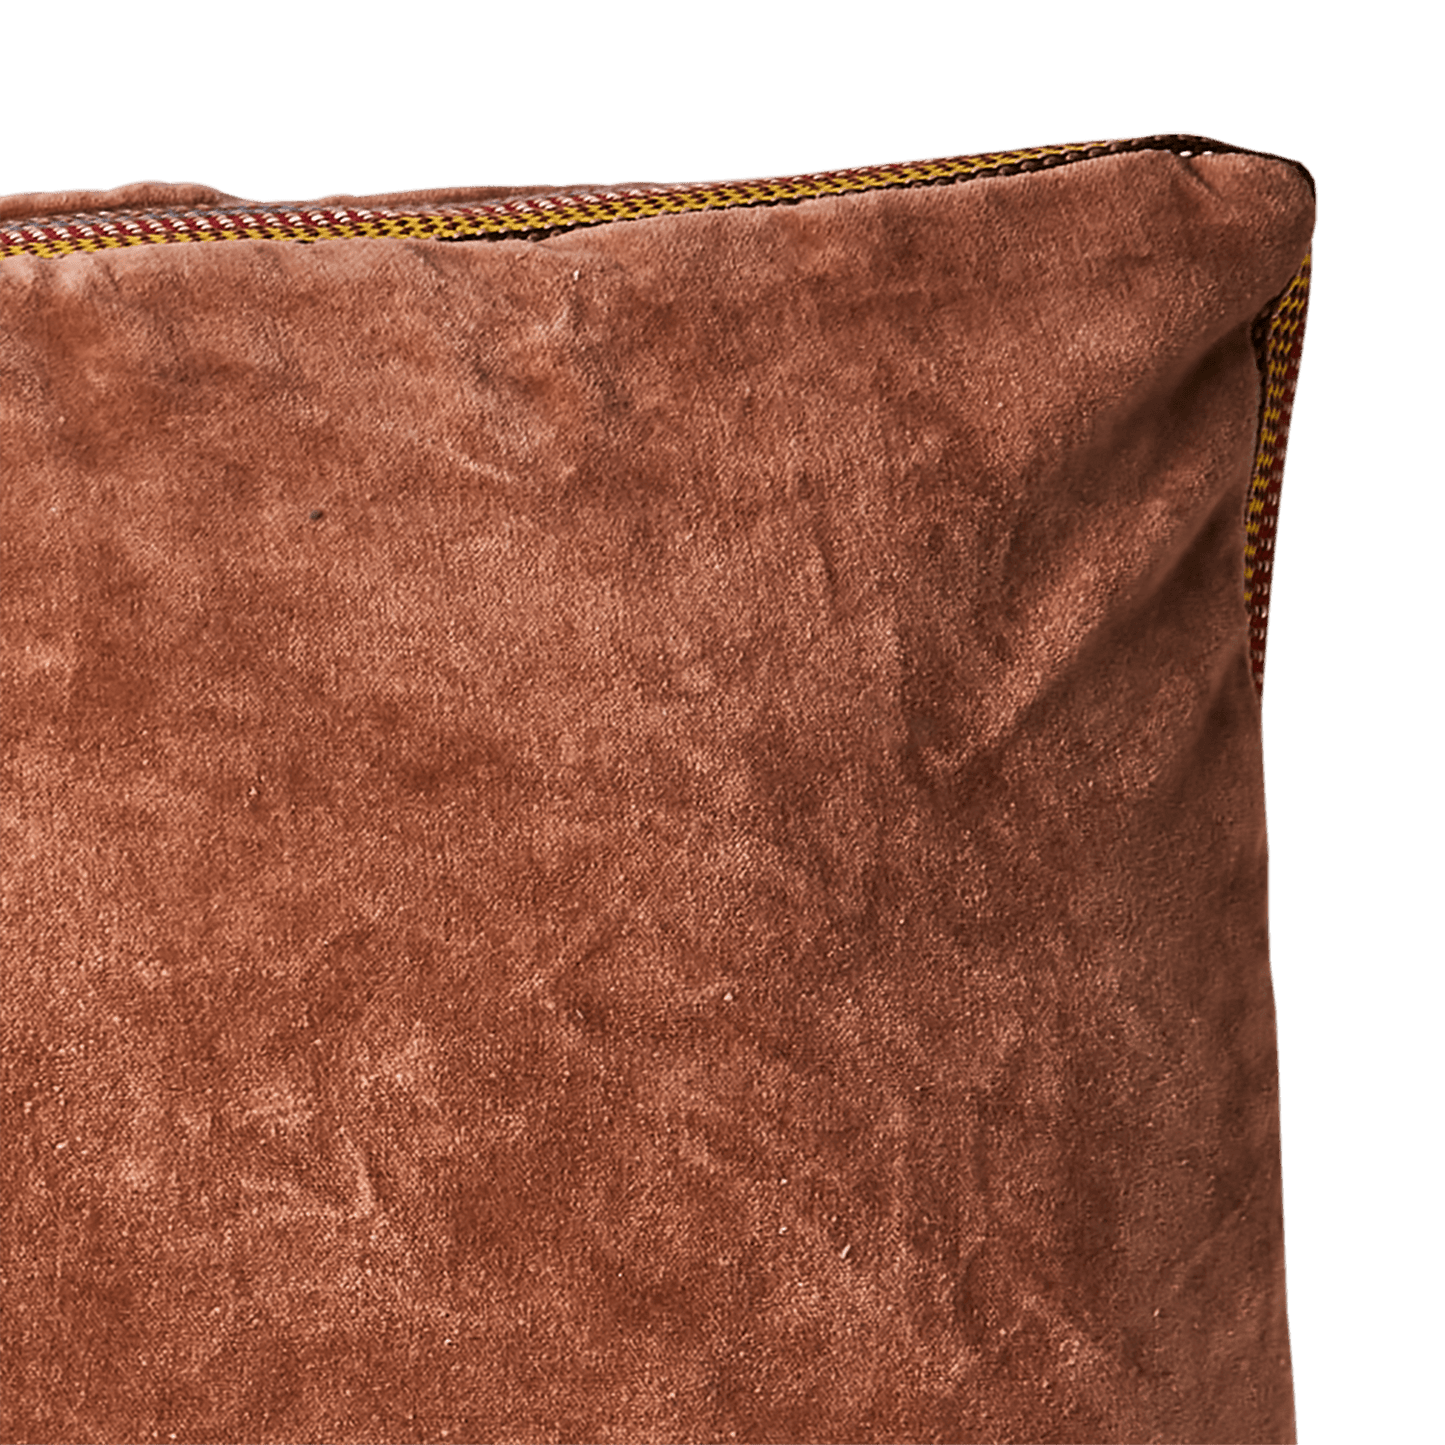 The Blush Cushion Cover - 110 x 40 cm - Flo & Joe